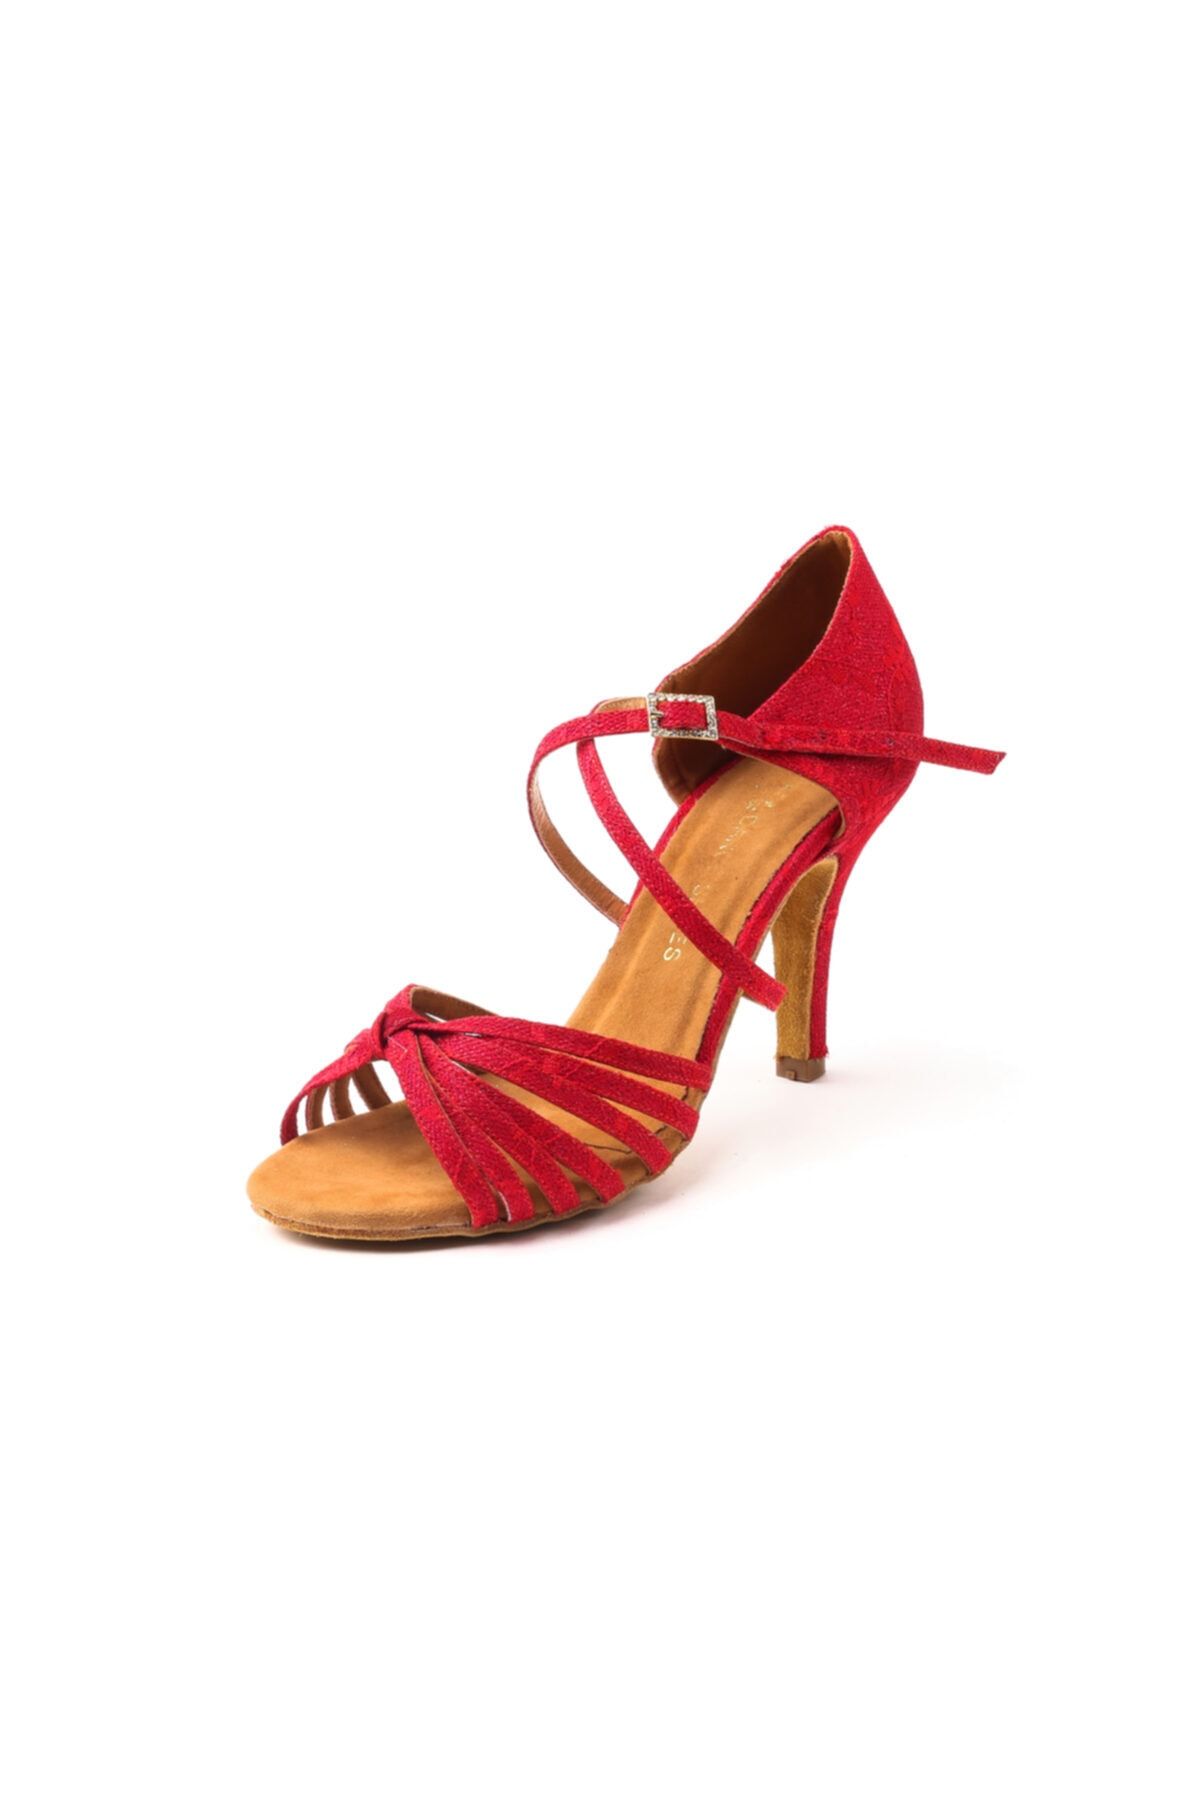 DANS AYAKKABISI Kadın Kırmızı Topuklu Ayakkabı